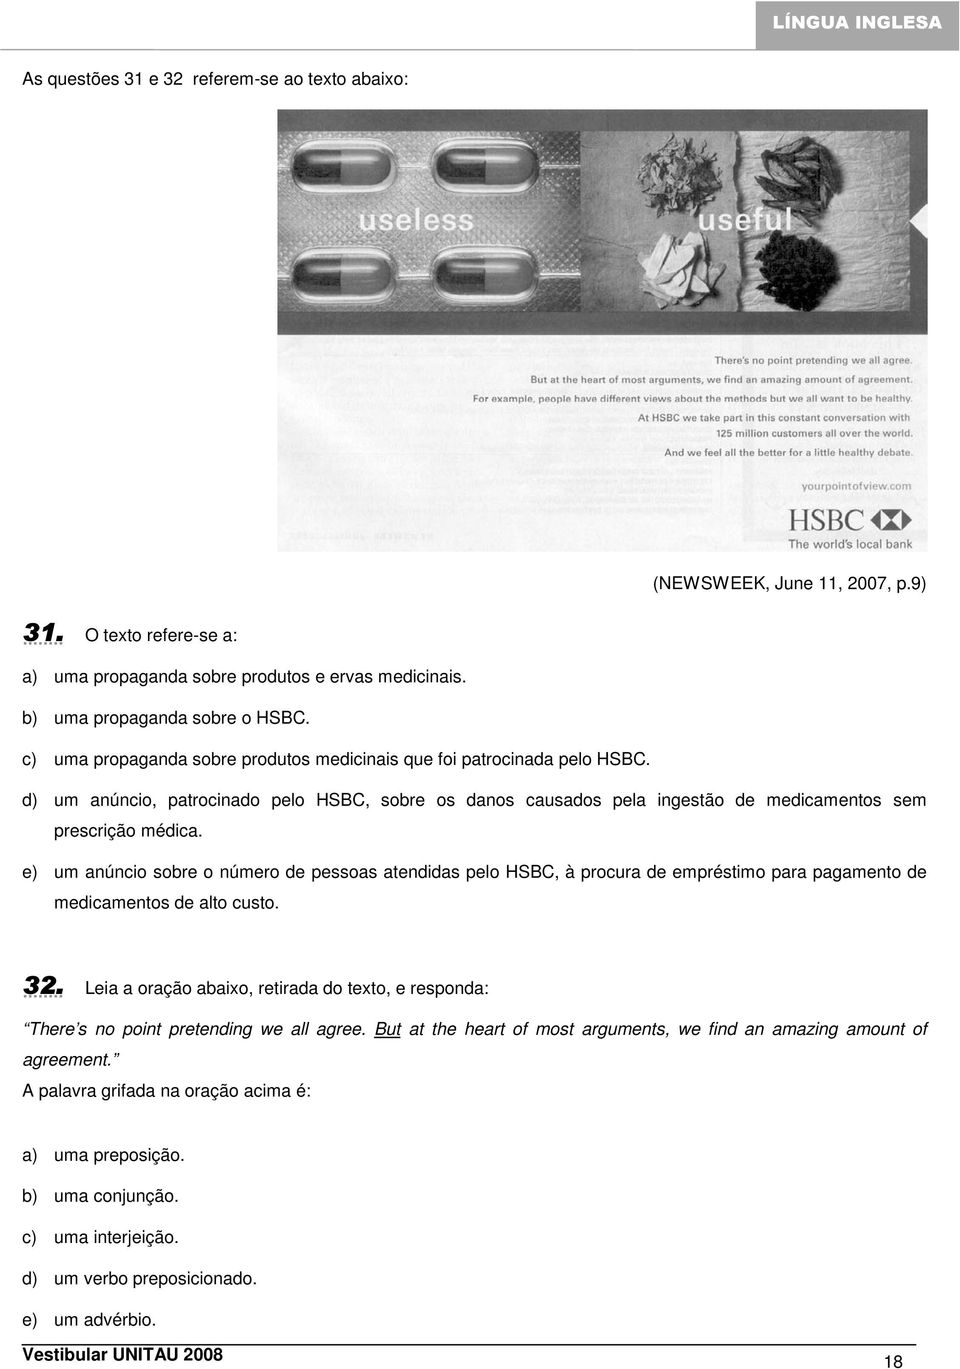 d) um anúncio, patrocinado pelo HSBC, sobre os danos causados pela ingestão de medicamentos sem prescrição médica.